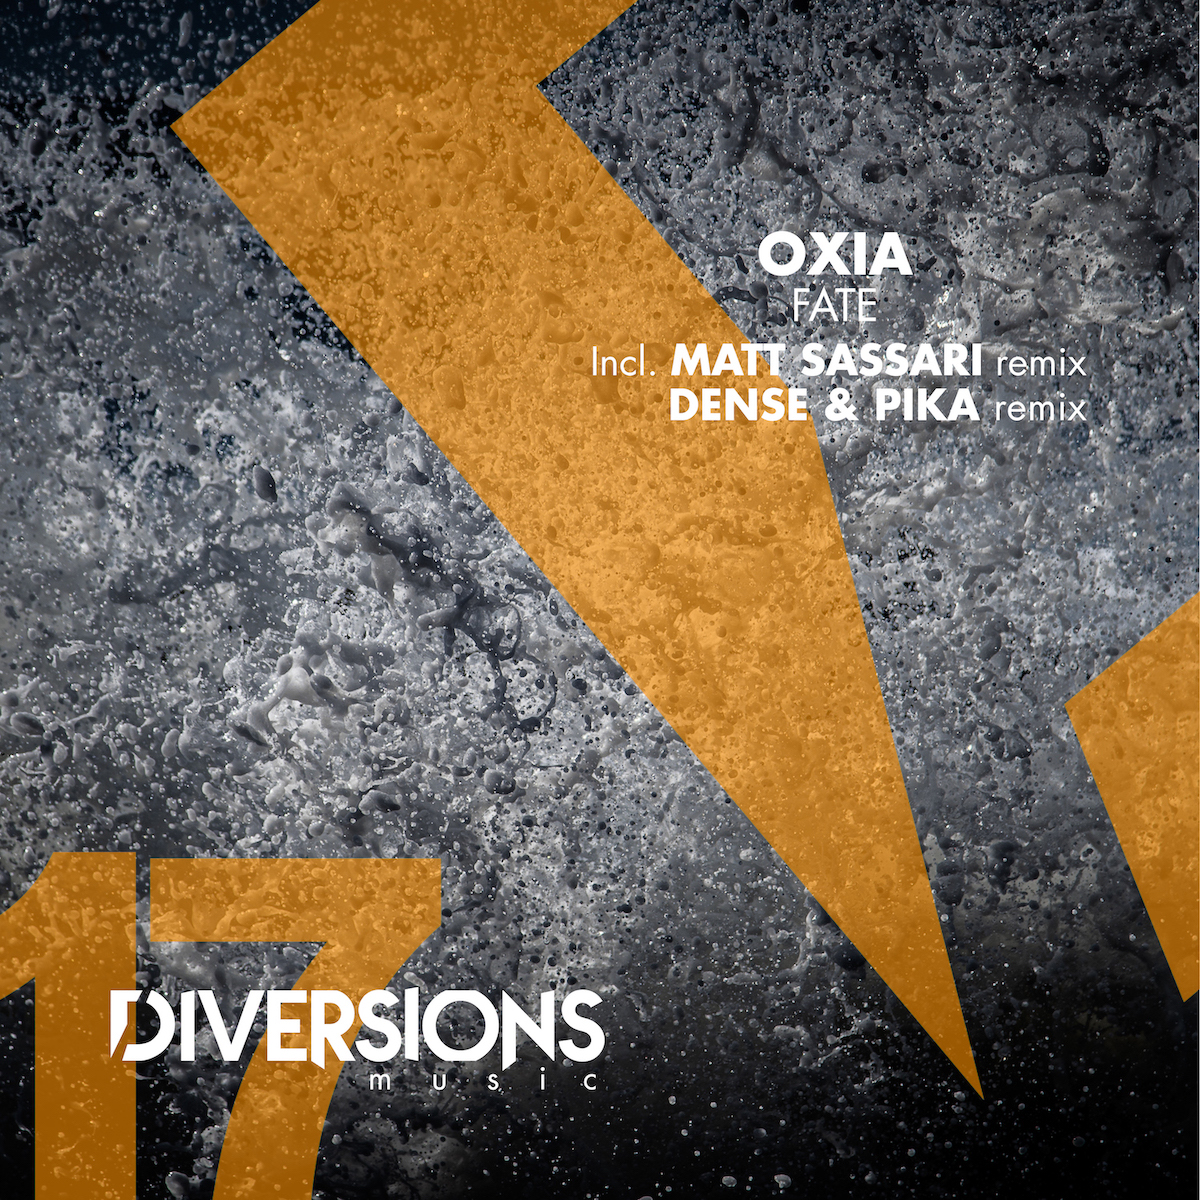 You are currently viewing OXIA revient sur son label Diversions Music avec un EP en trois parties, « Fate », incluant des remixes de Dense & Pika et Matt Sassari